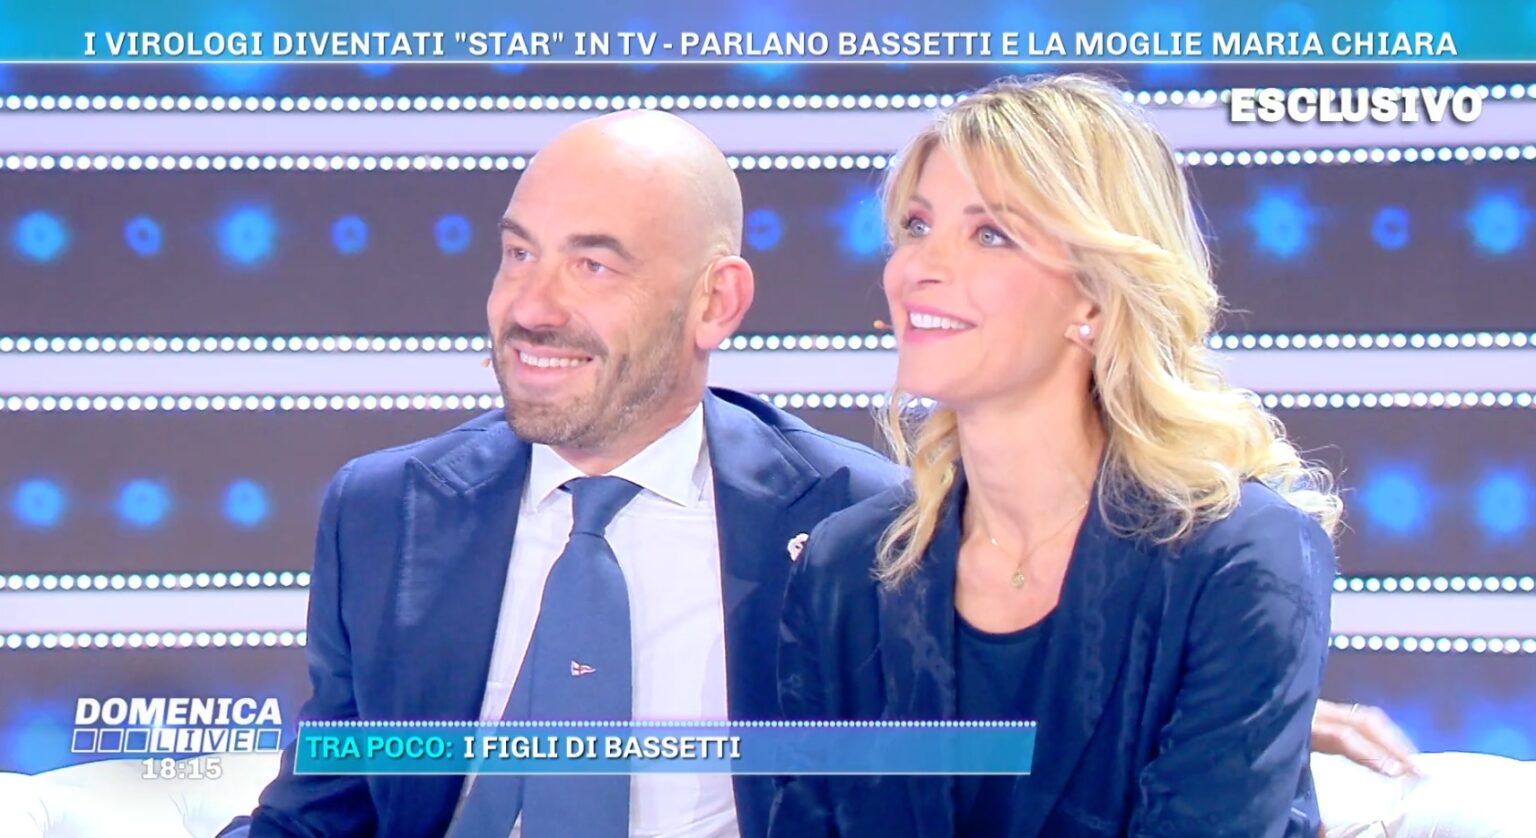 Matteo Bassetti con i capelli foto a "Domenica Live ...